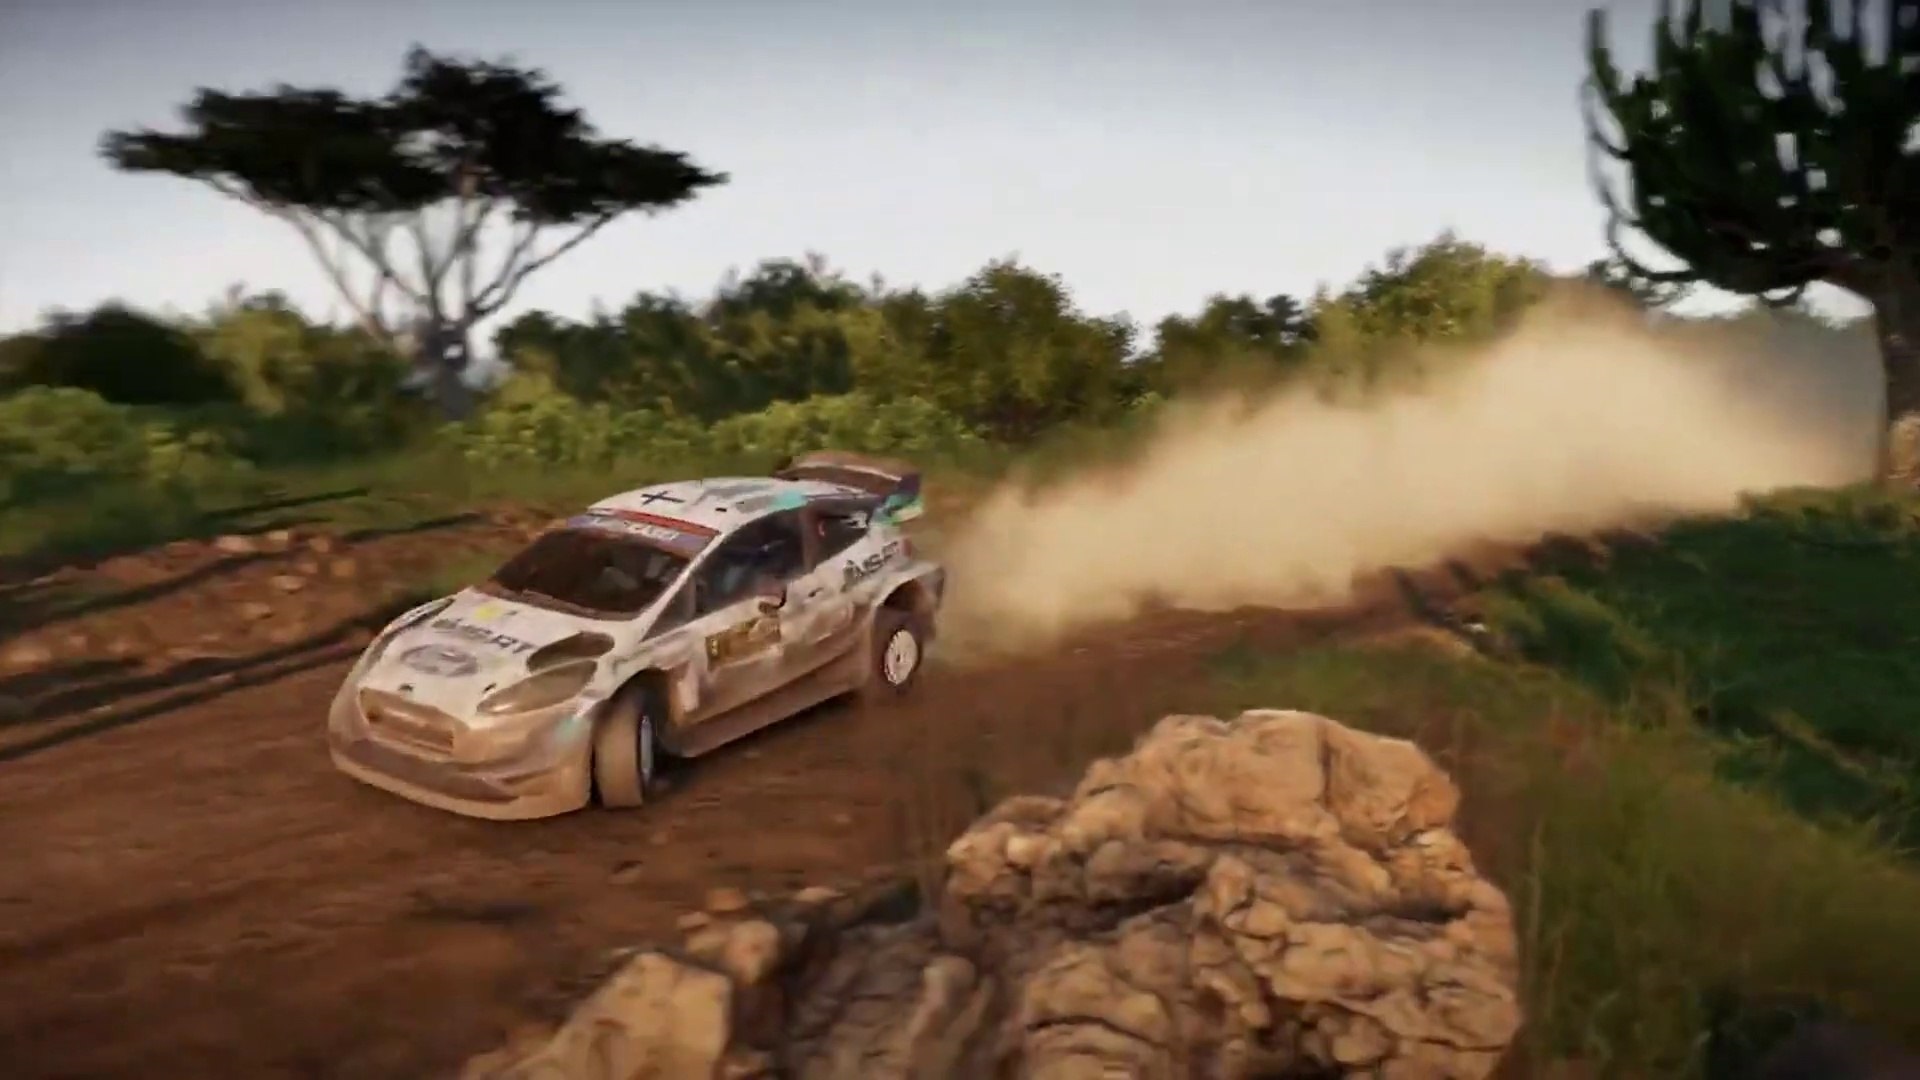 WRC 9